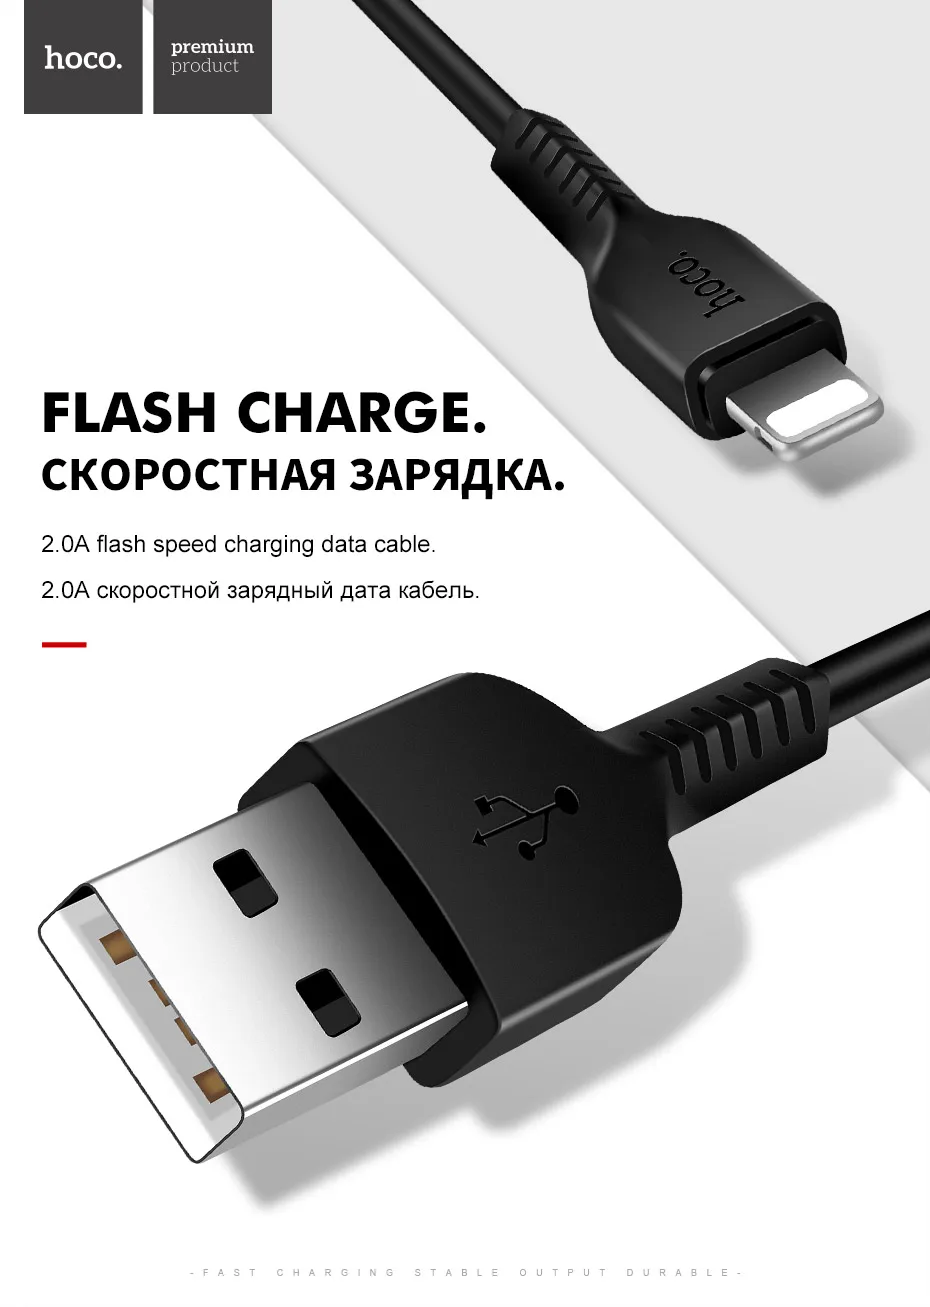 Hoco для iPhone кабель для быстрой зарядки данных USB кабель для iPhone 11 Pro Max 8 7 6 6s Plus 5 iPad Air Mini Кабели для зарядки телефонов